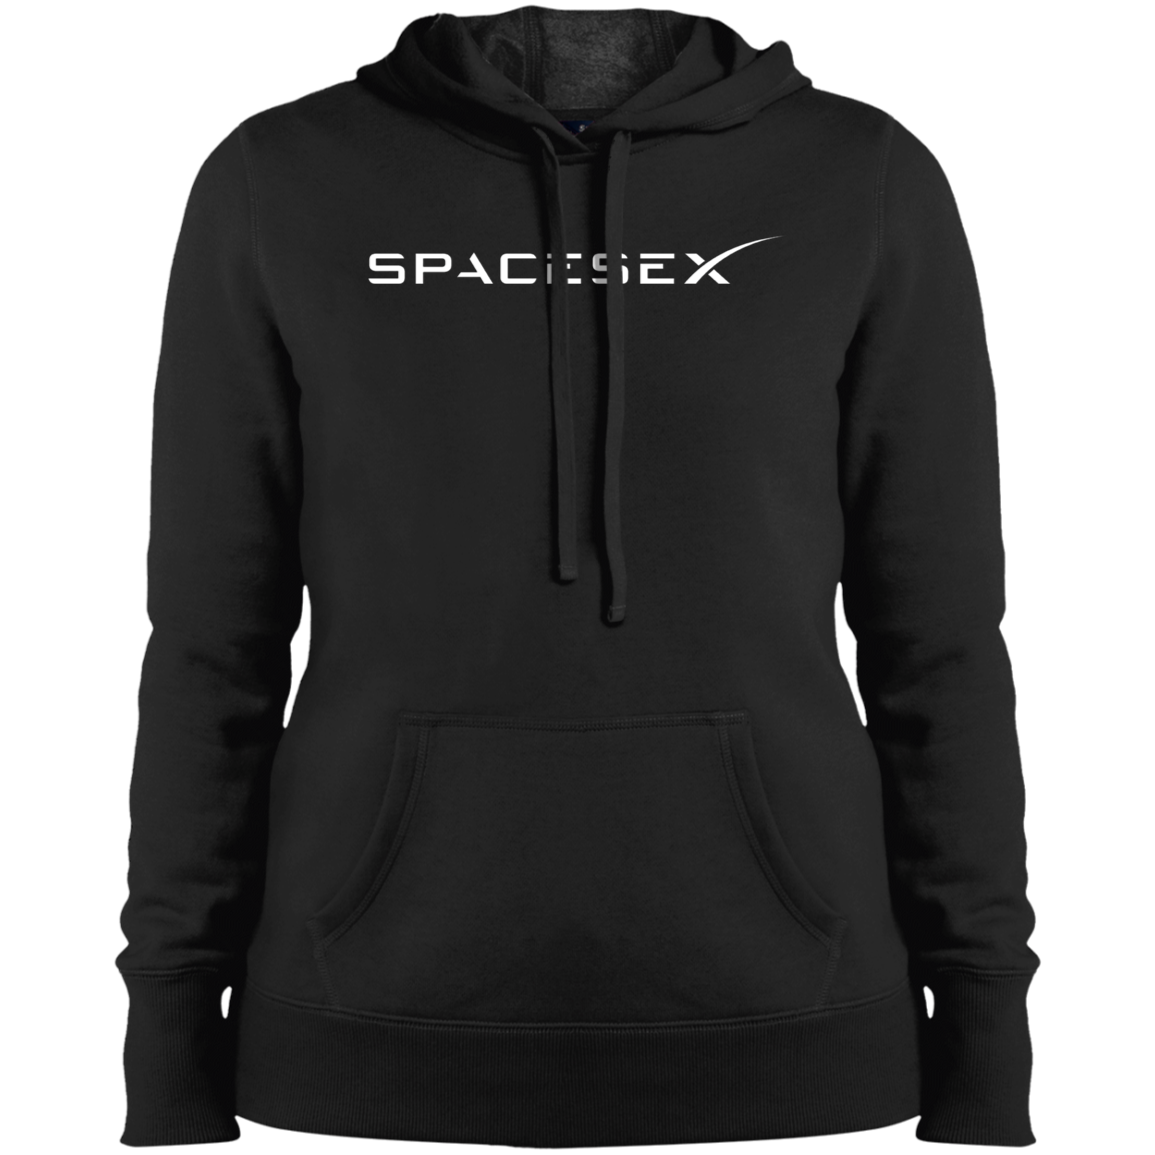 "SpaceseX" Ladies' Pullover Hooded Sweatshirt